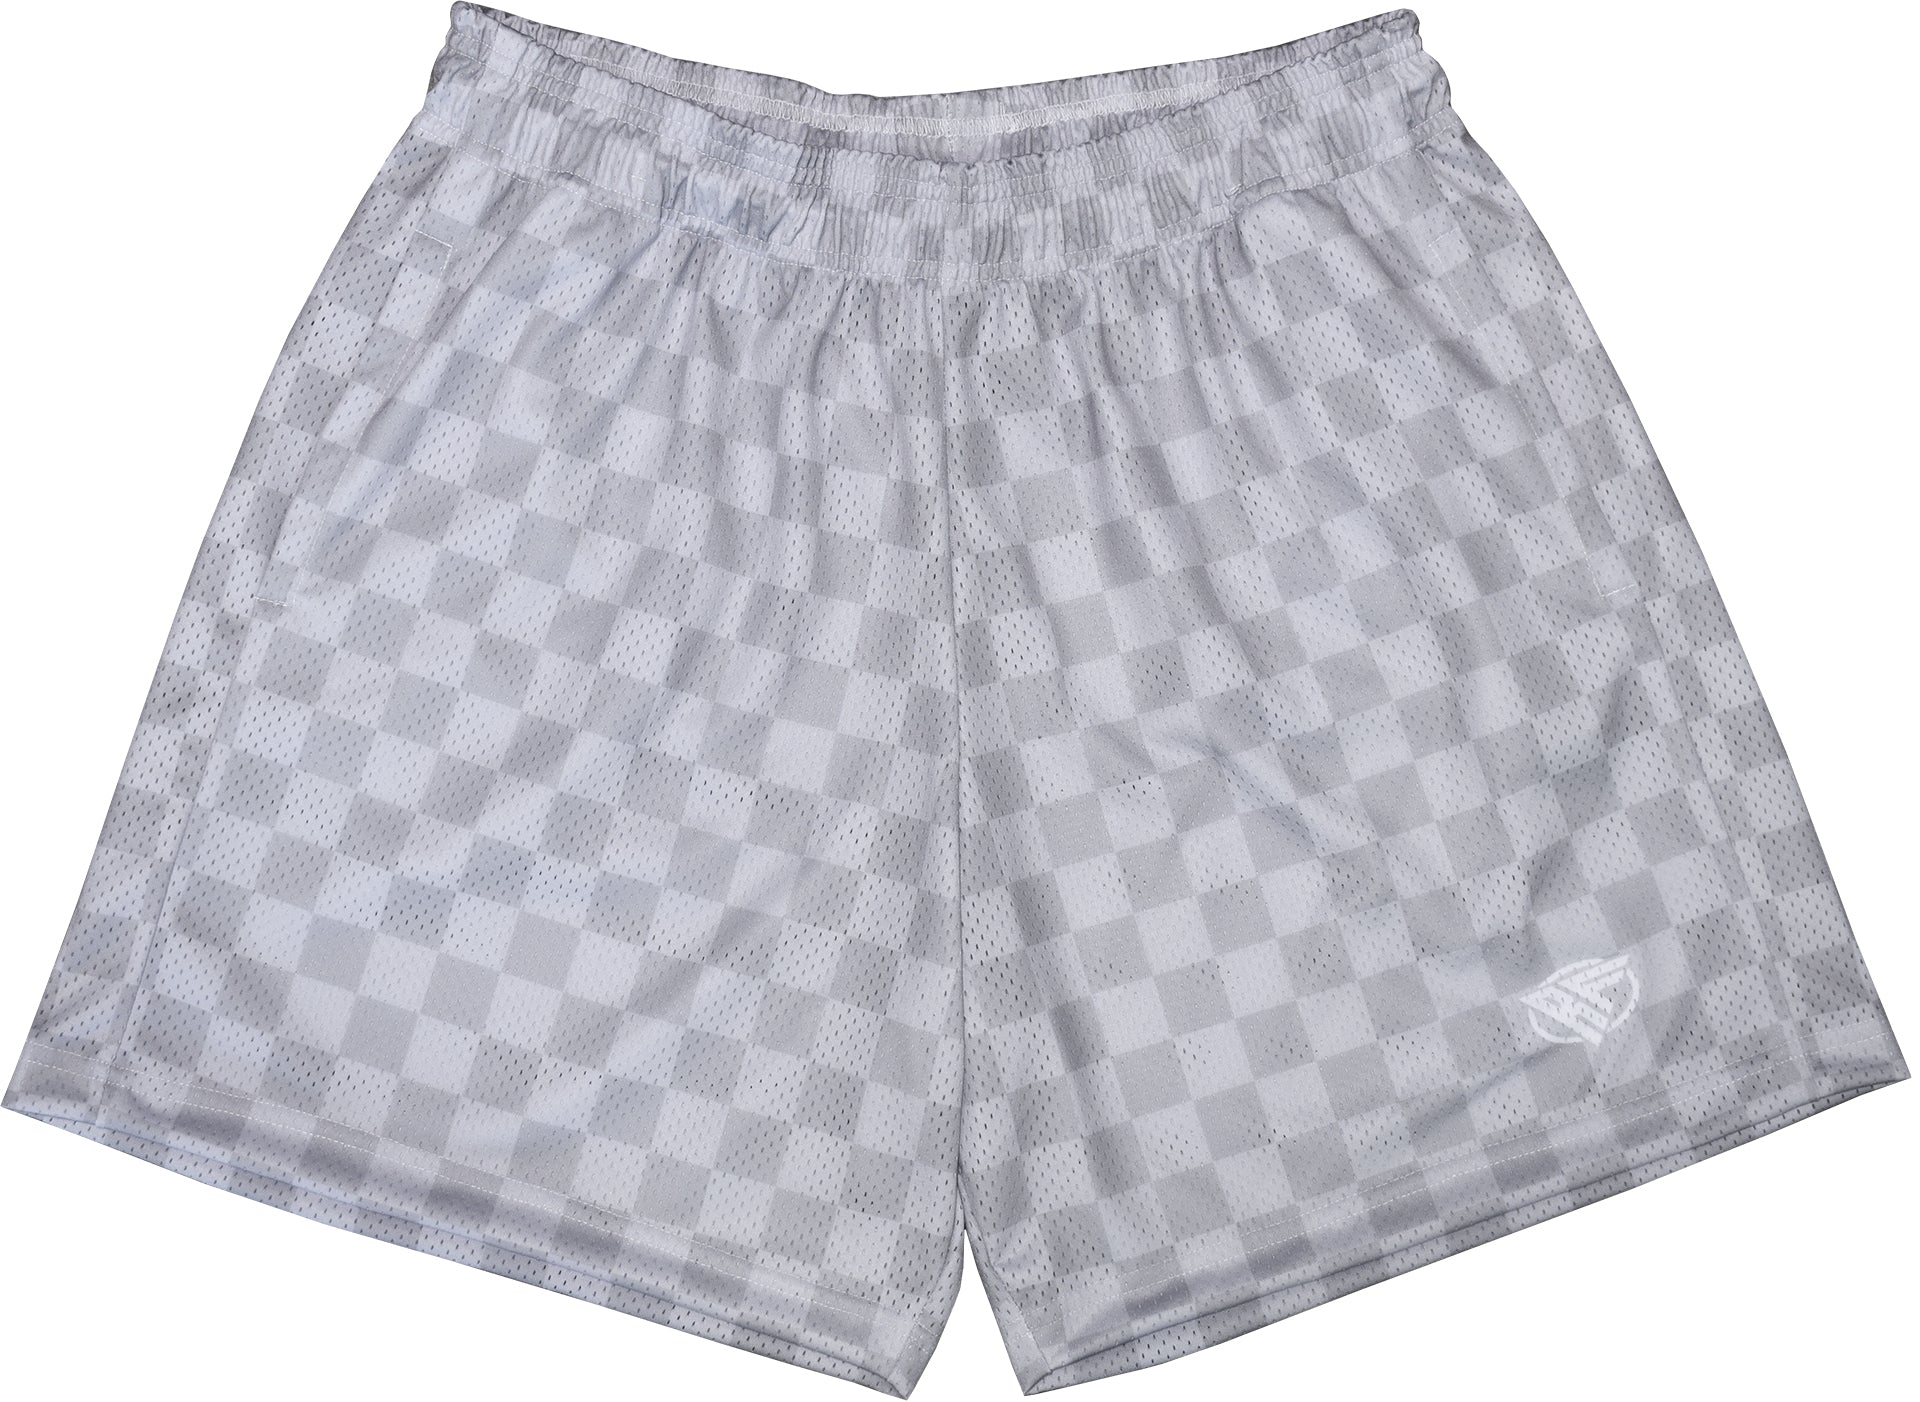 Andorine check print shorts - Grey